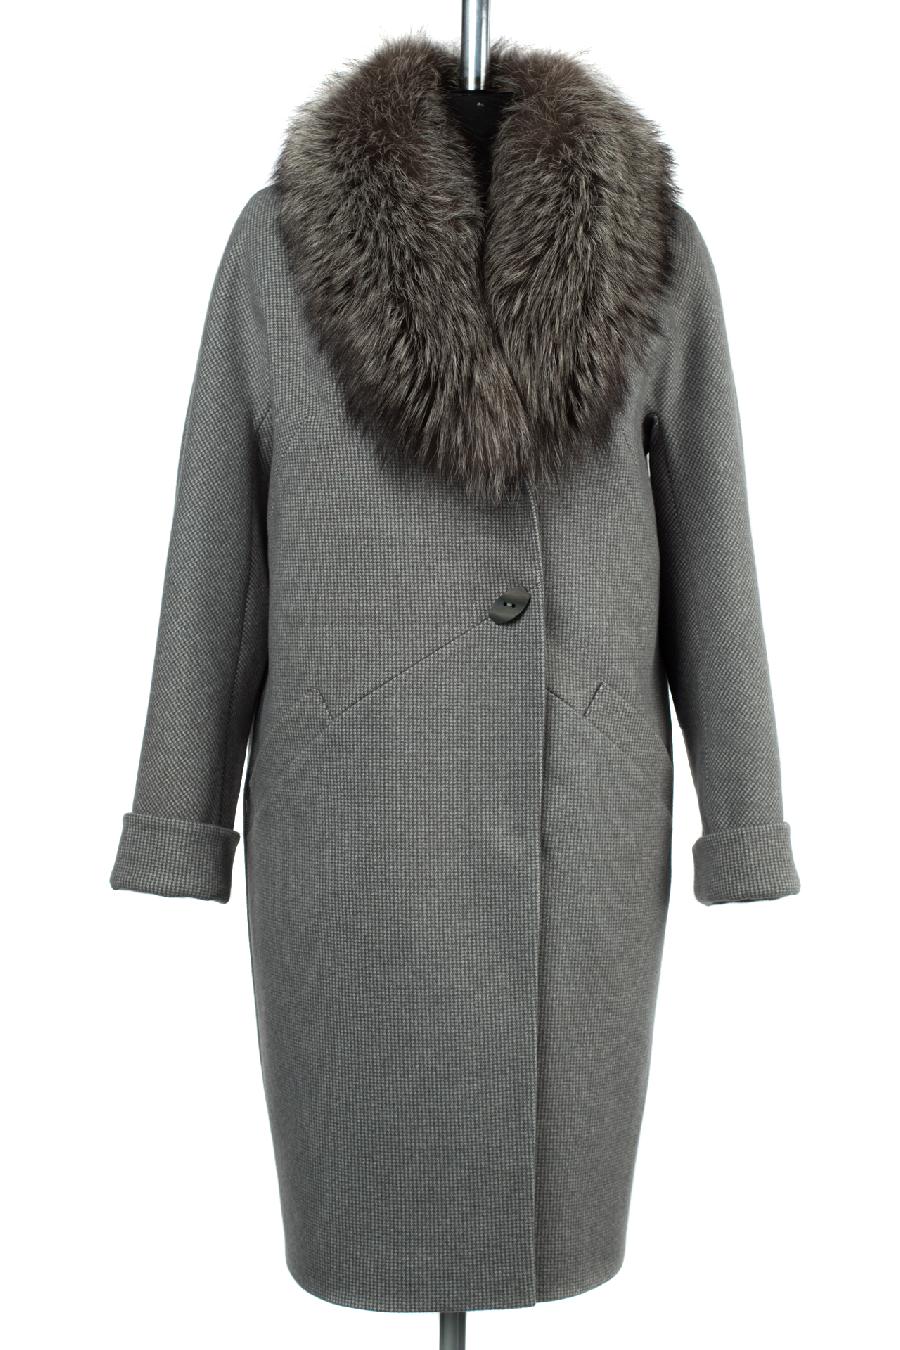 02-2470 Пальто женское утепленное Микроворса серый